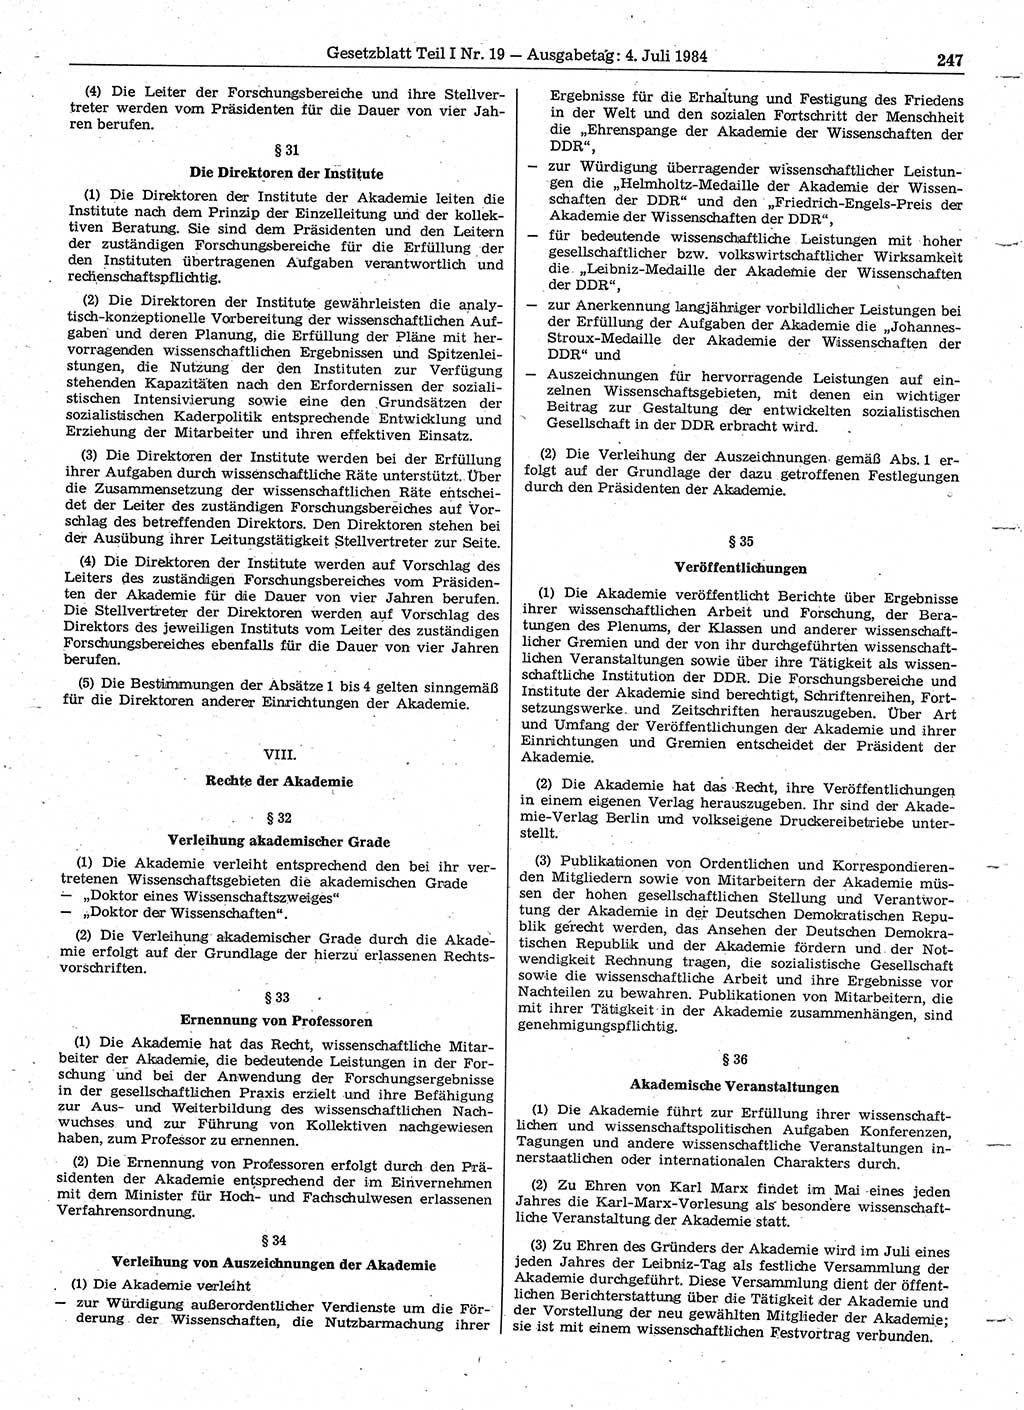 Gesetzblatt (GBl.) der Deutschen Demokratischen Republik (DDR) Teil Ⅰ 1984, Seite 247 (GBl. DDR Ⅰ 1984, S. 247)